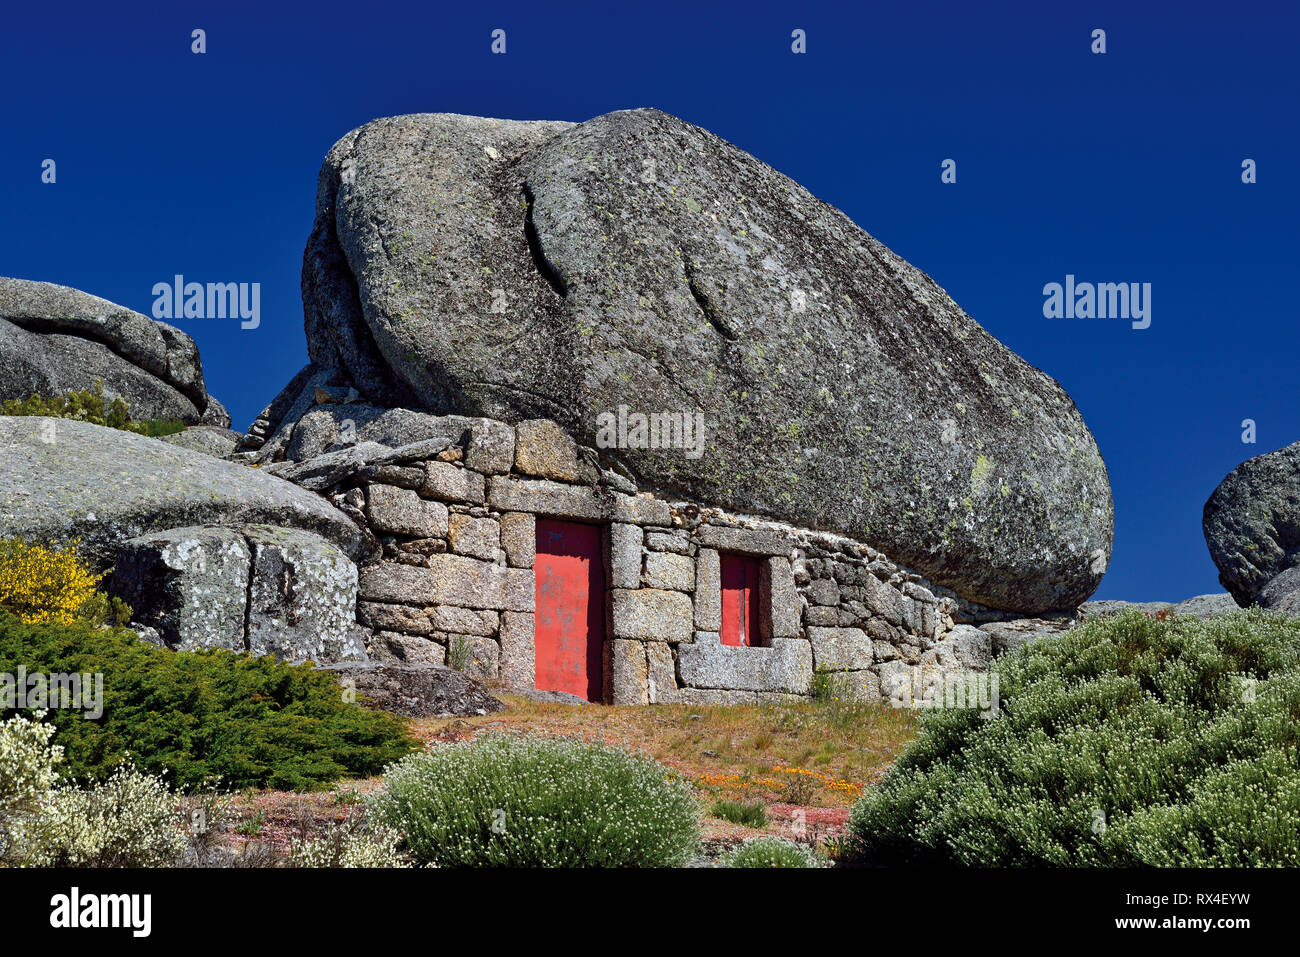 Casa de piedra de granito integrada en roca enorme con el cielo de color azul oscuro en un día soleado Foto de stock